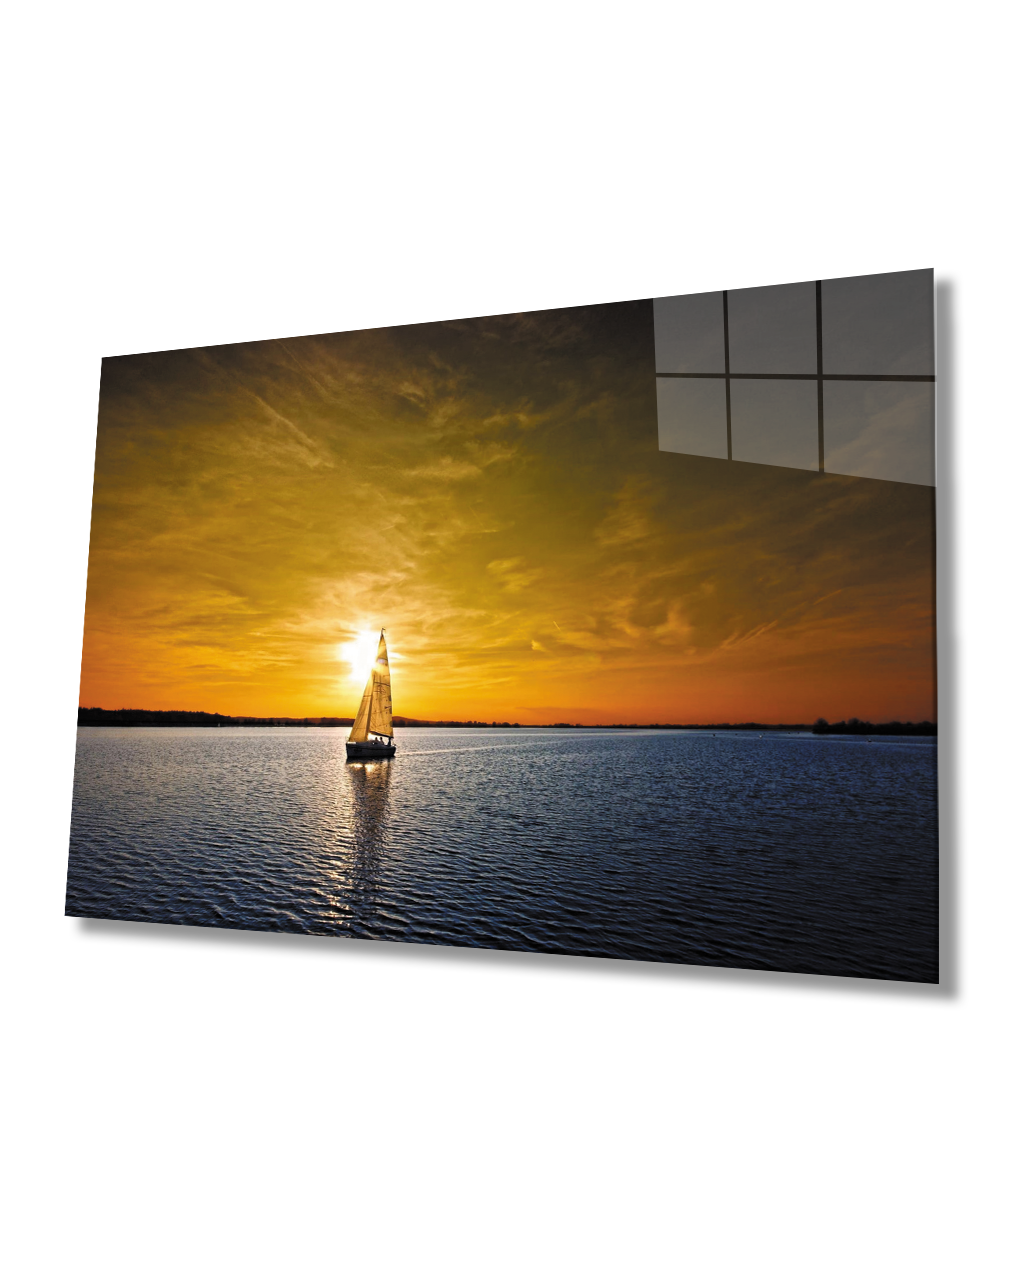 Gün Batımı Deniz Yelken Cam Tablo  4mm Dayanıklı Temperli Cam Sunset Sea Sail Glass Table 4mm Durable Tempered Glass